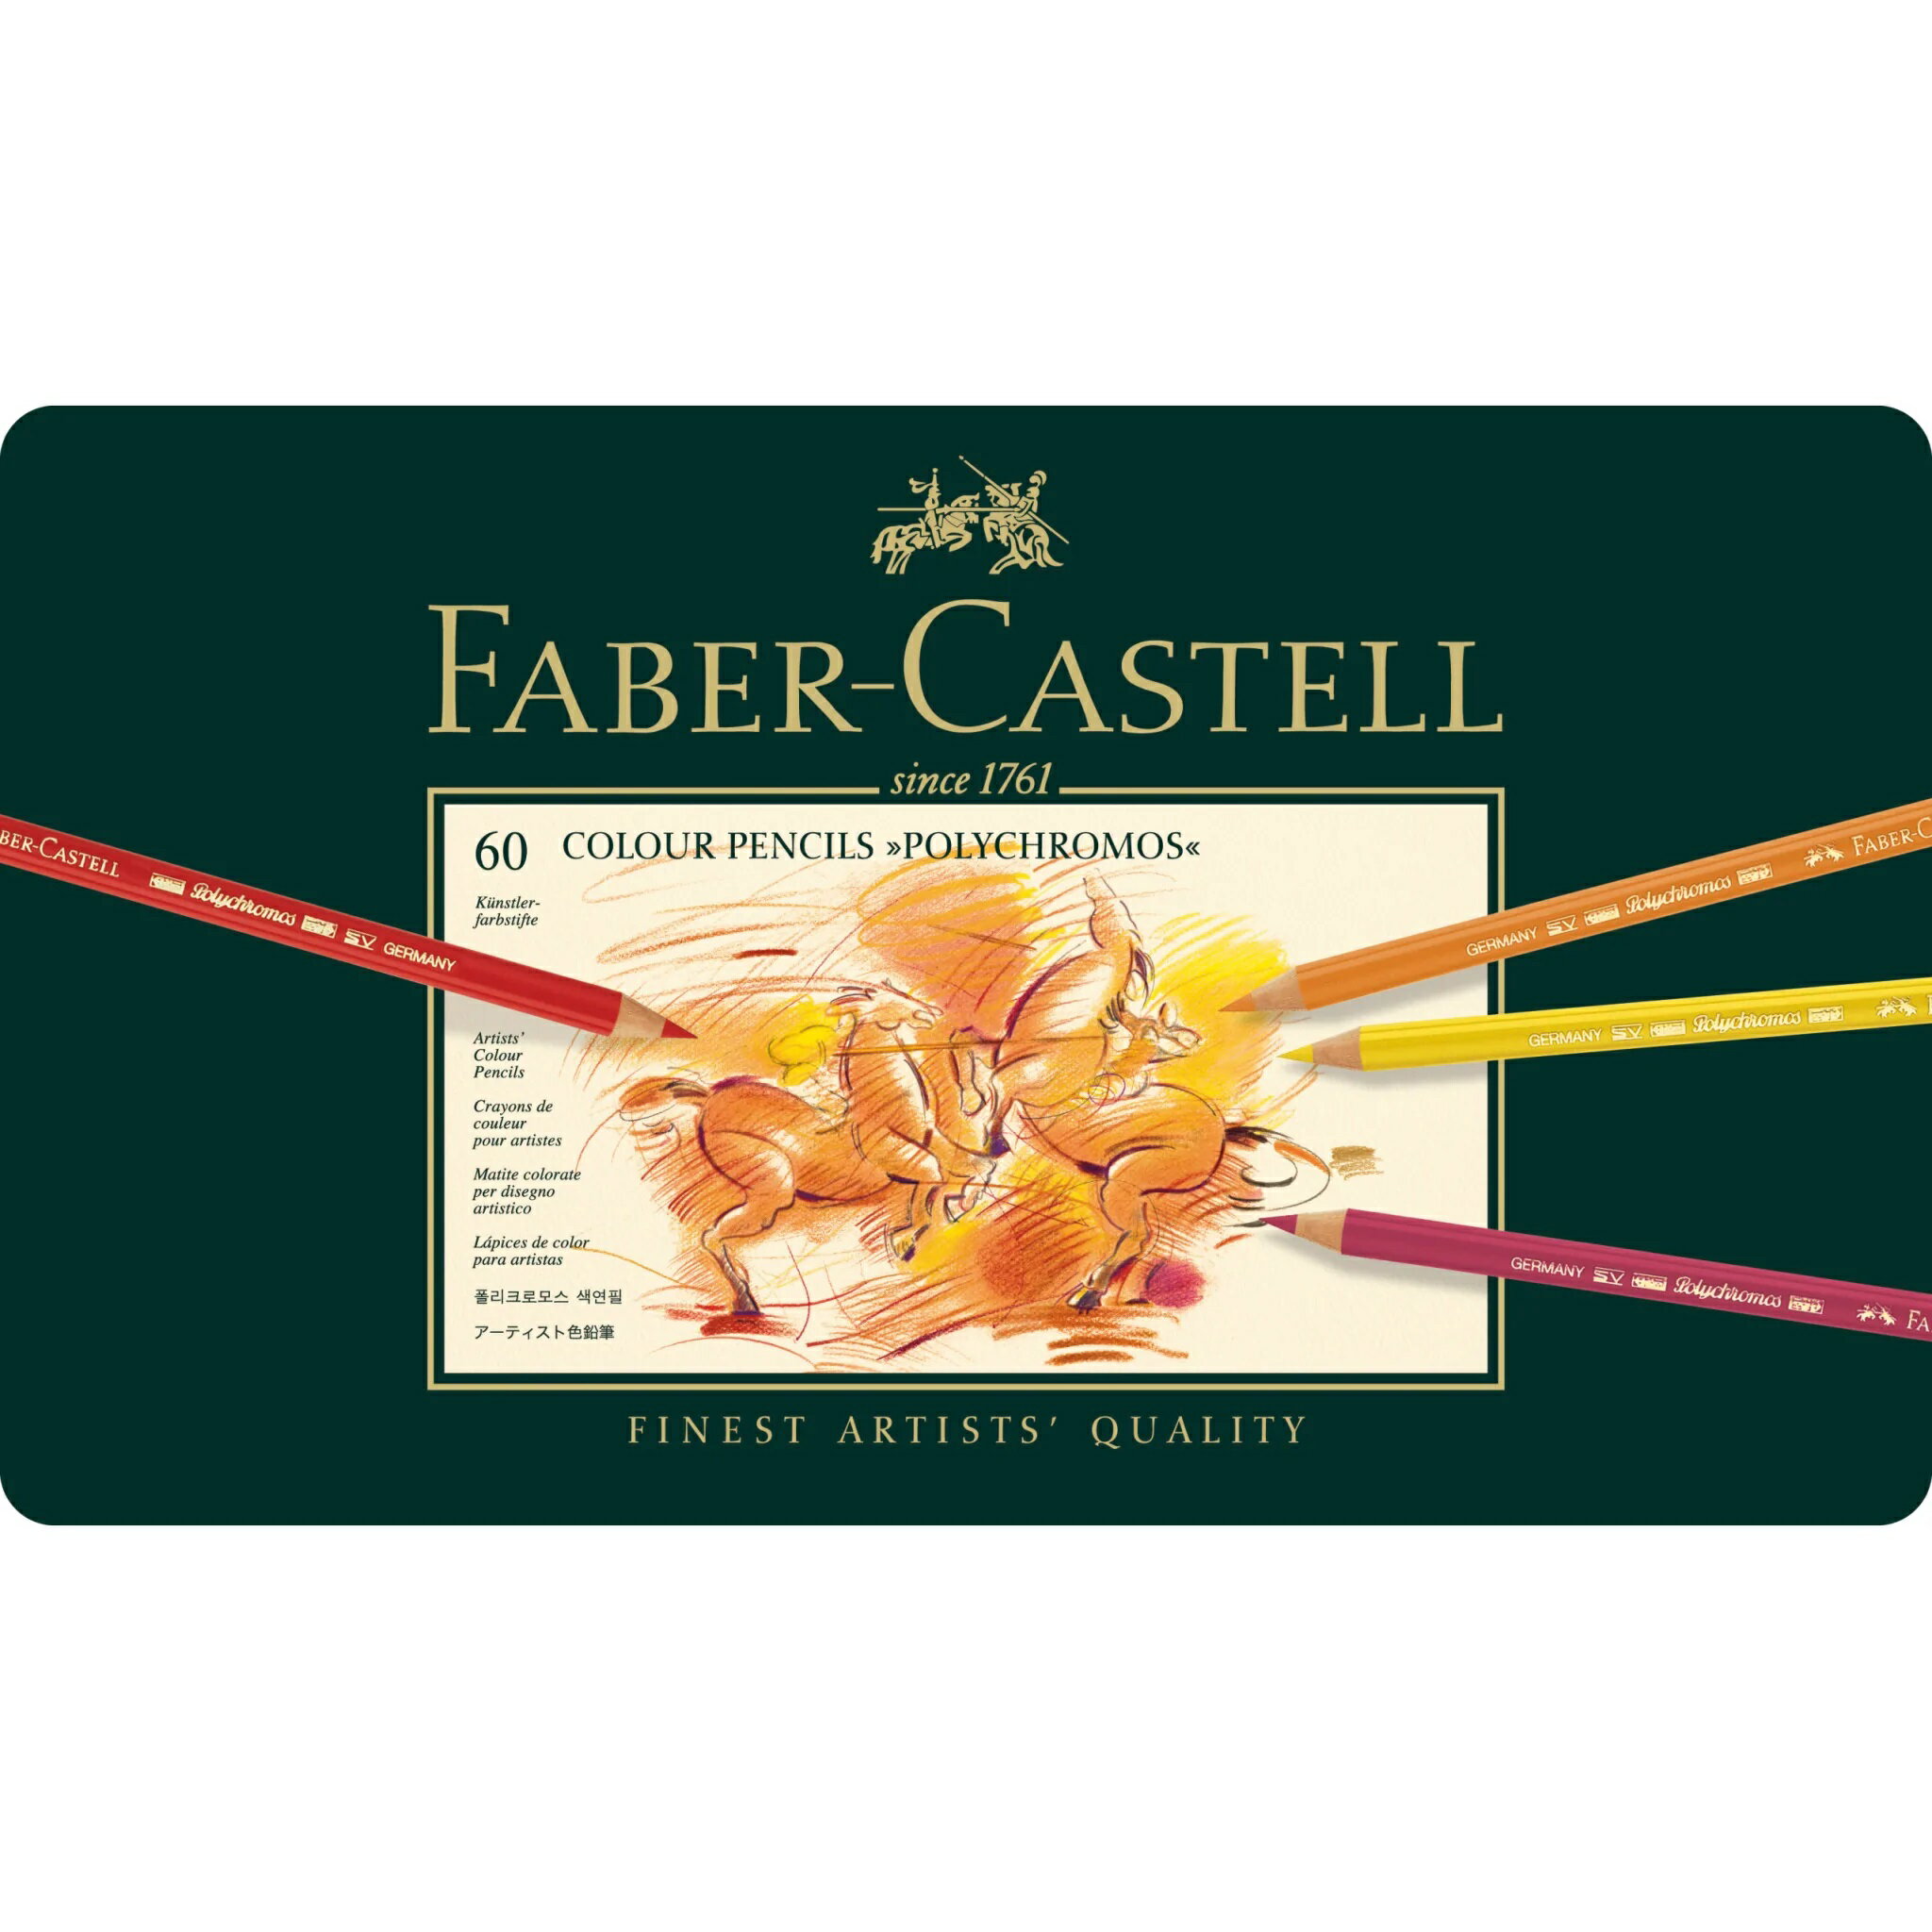 Faber-Castell藝術級油性色鉛筆 60色精裝版 *110060